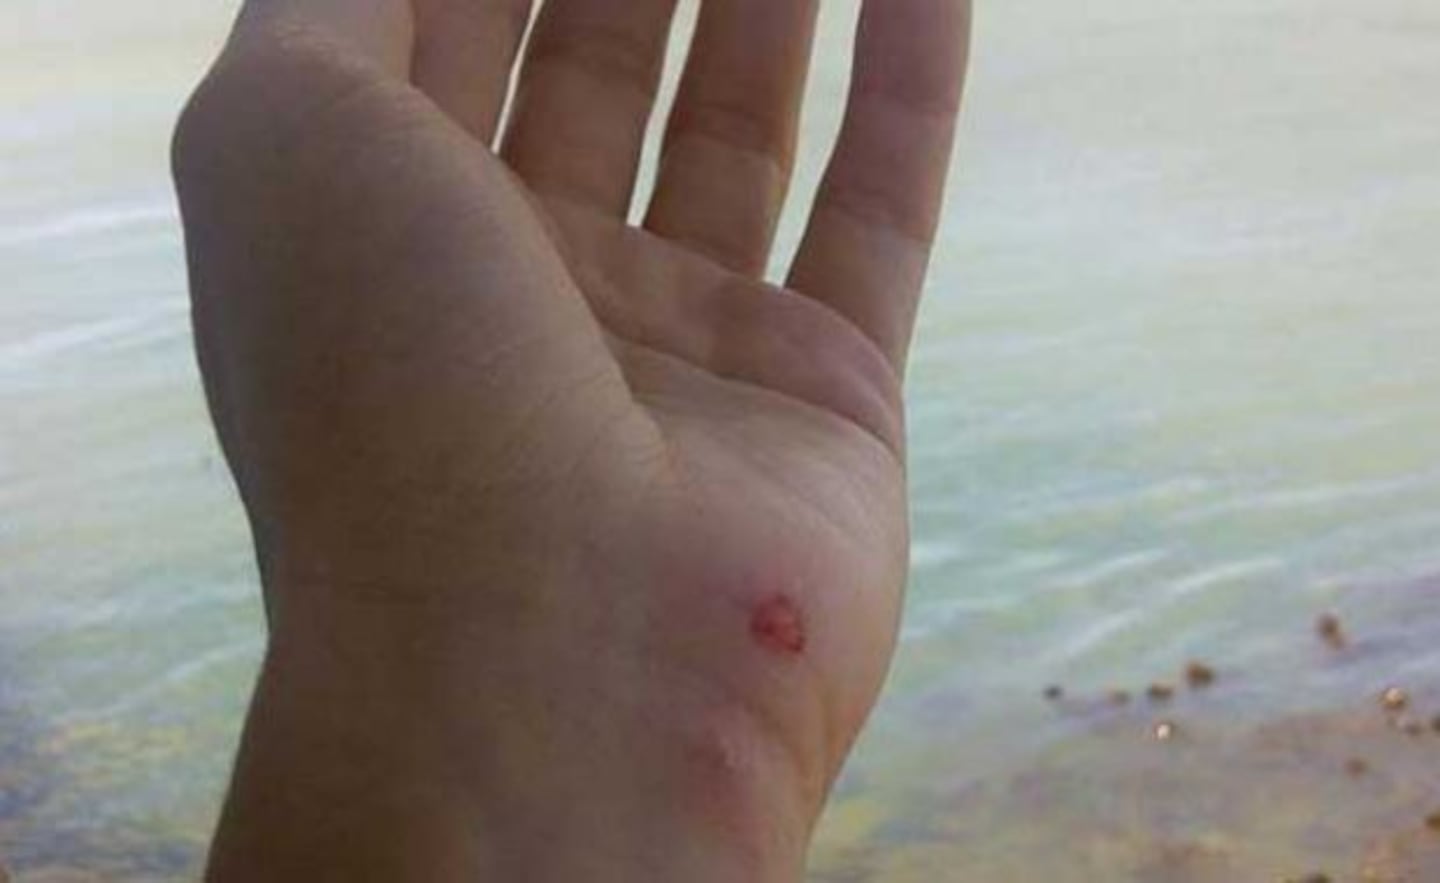 Shakira, atacada por un lobo marino en plenas vacaciones. (Foto: Facebook Shakira)